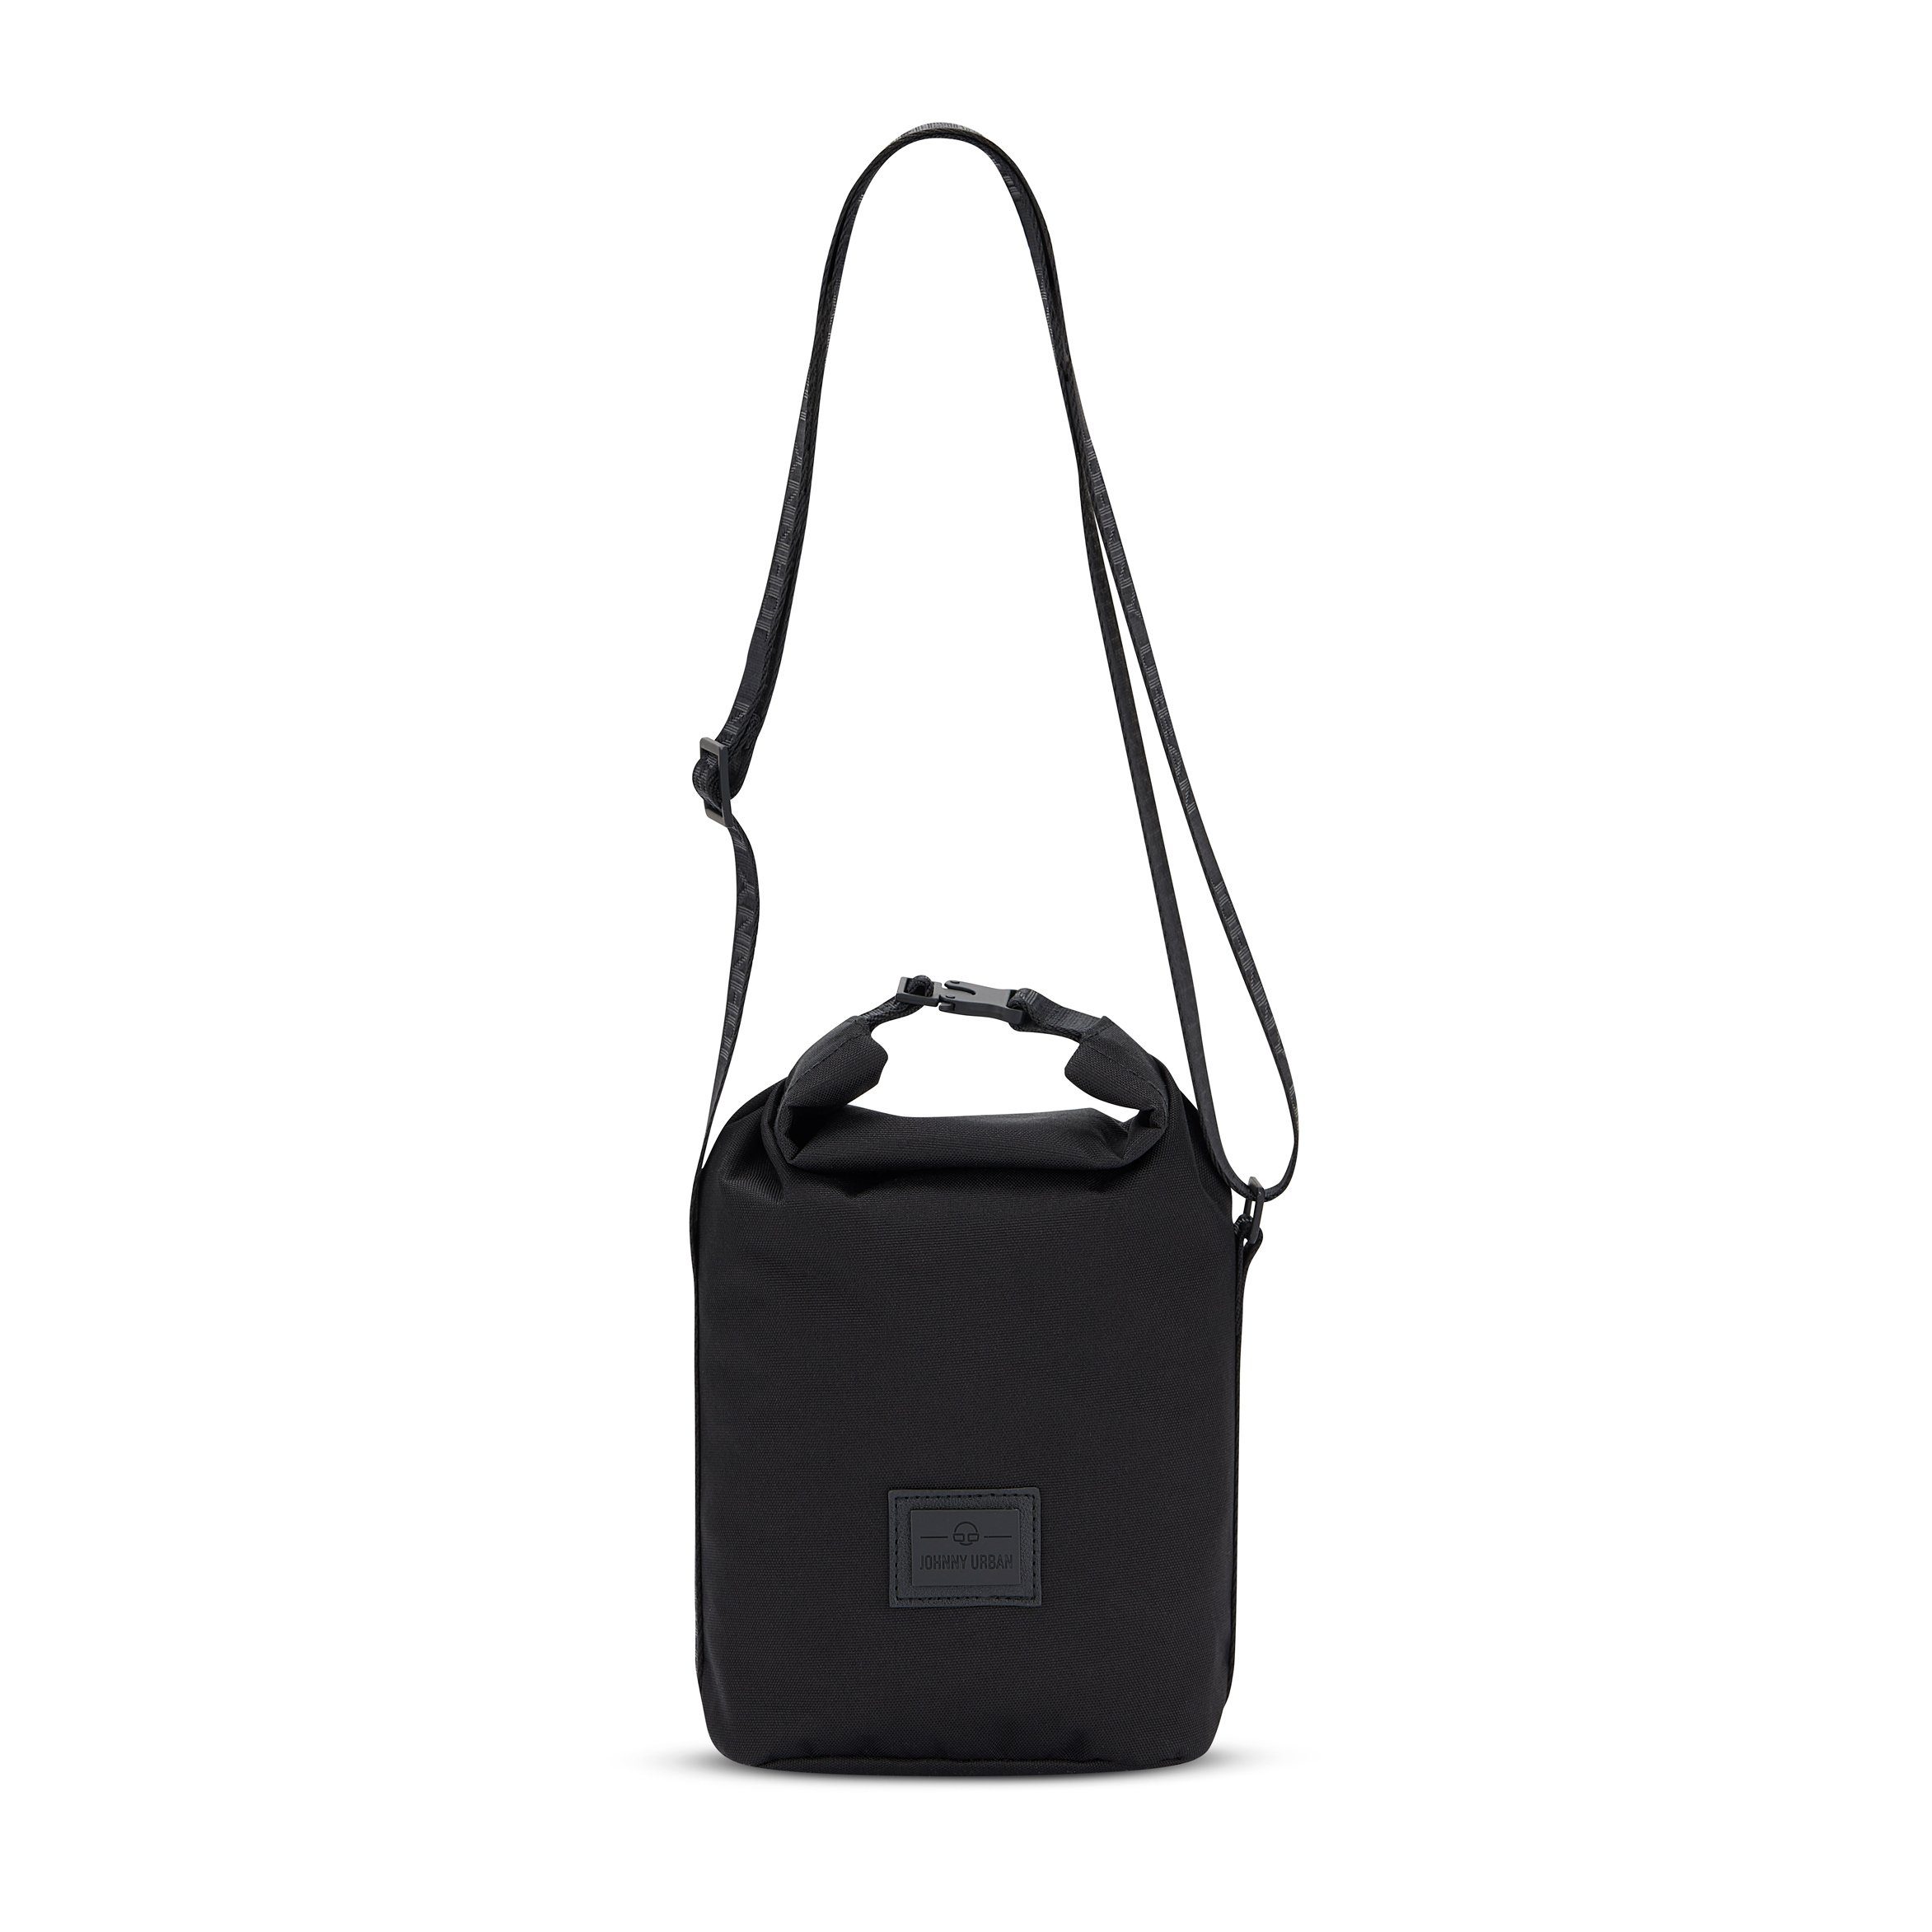 Johnny Urban Handtasche RUE Handtasche Damen, Stylische Umhängetasche, Flexible Größe, Wasserabweisend Schwarz